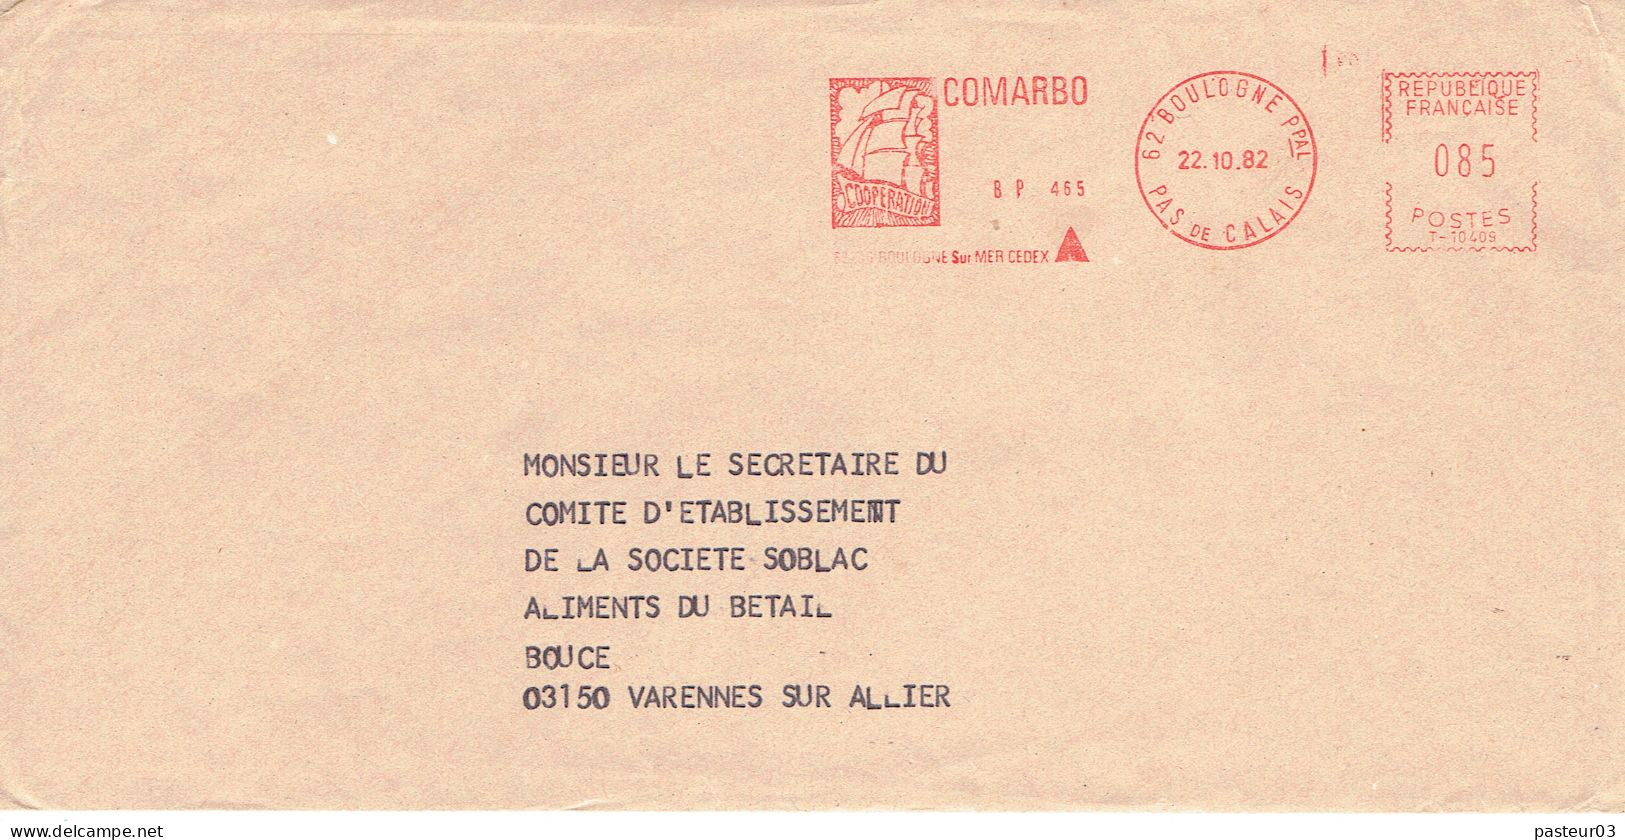 COMARBO Coopération Boulogne Sur Mer 22-10-1982 - EMA ( Maquina De Huellas A Franquear)